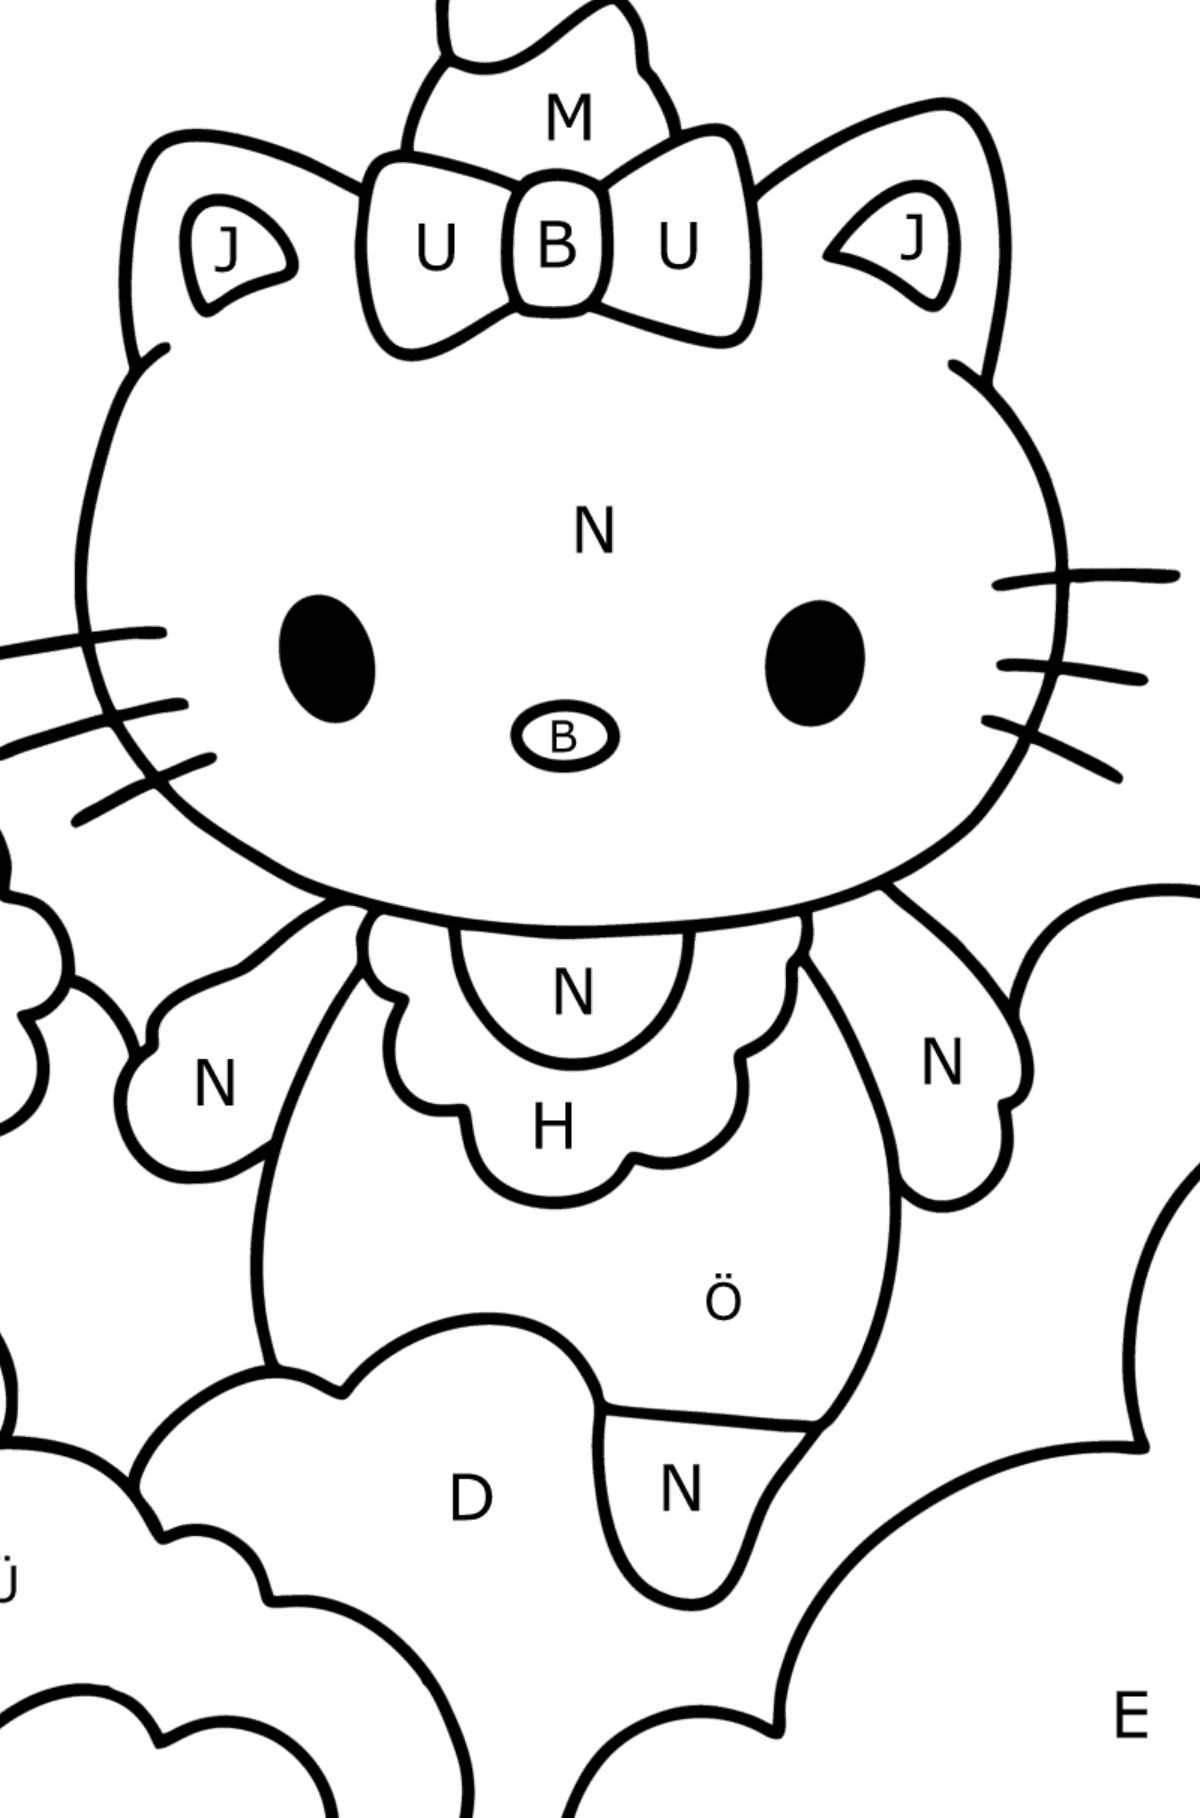 Boyama sayfası Hello Kitty tek boynuzlu at - Harflerle Boyama çocuklar için